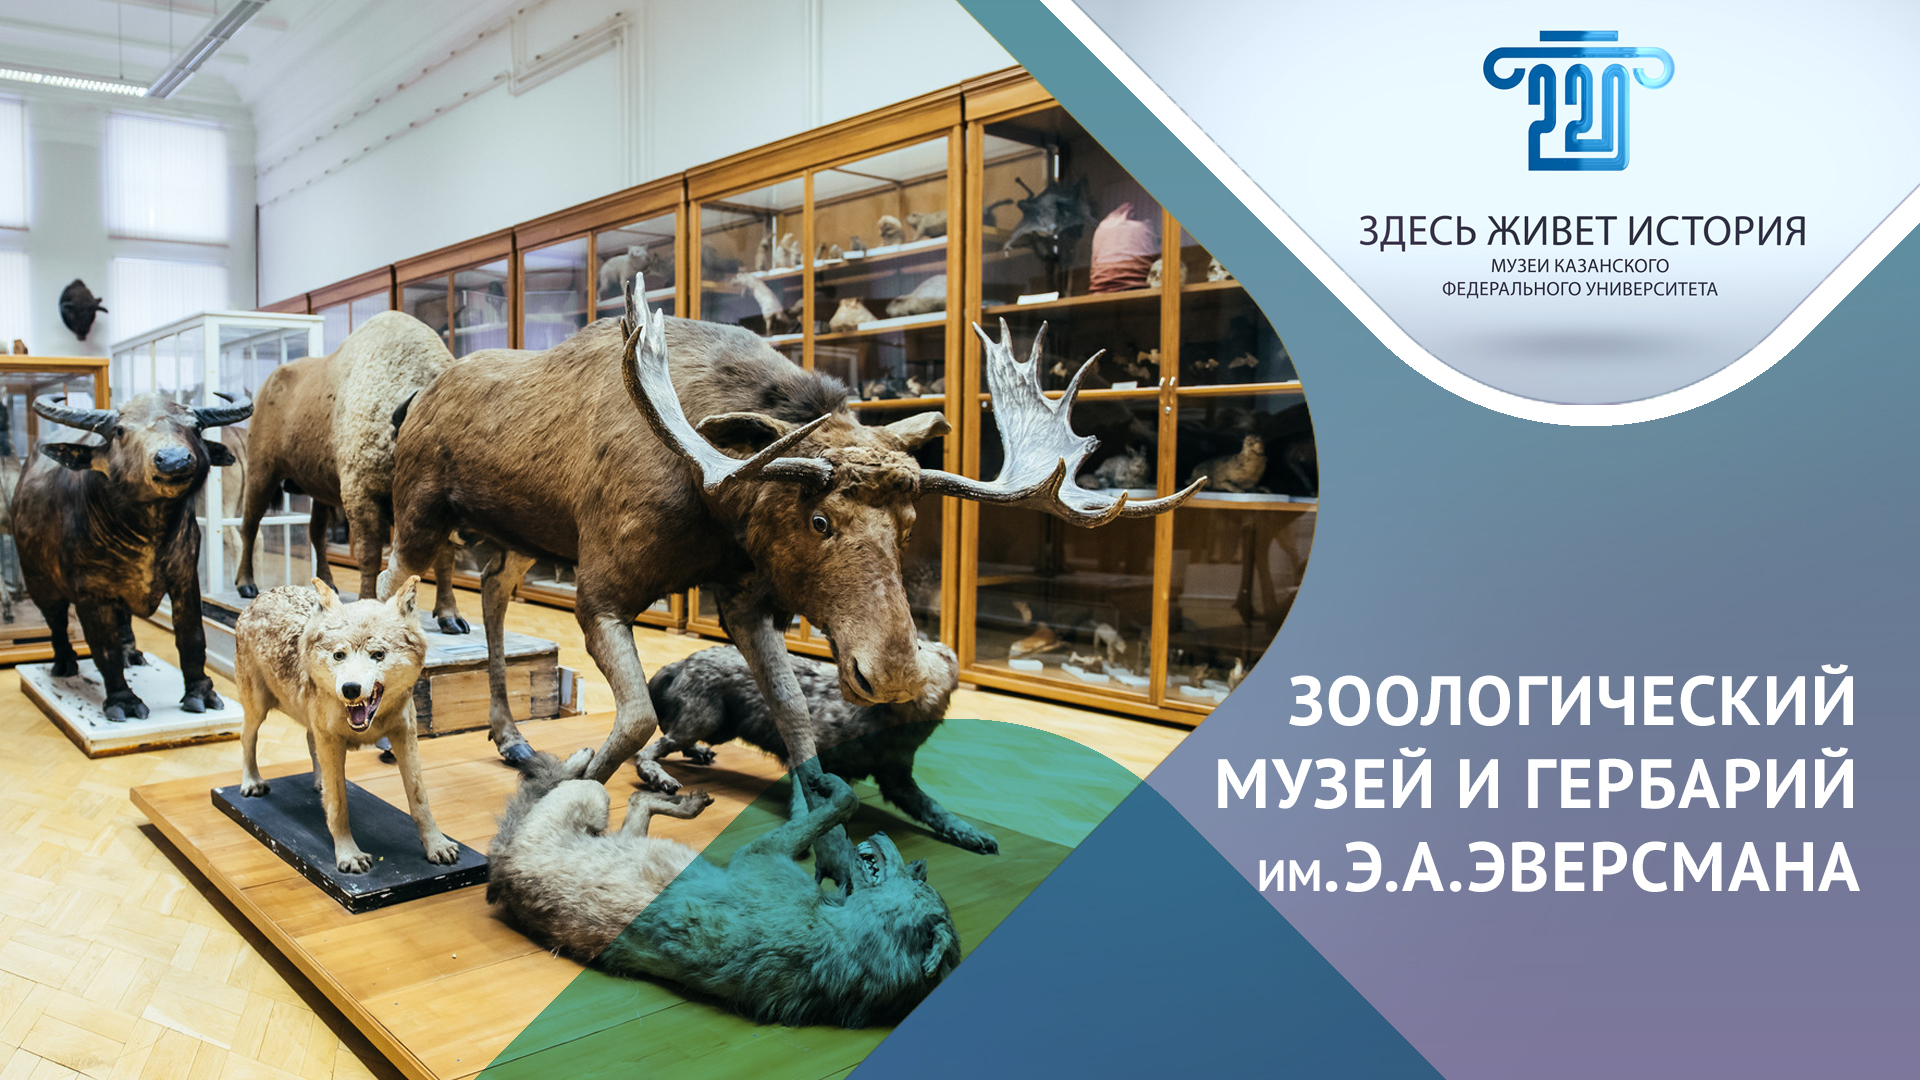 Зоологический музей Казанского федерального университета